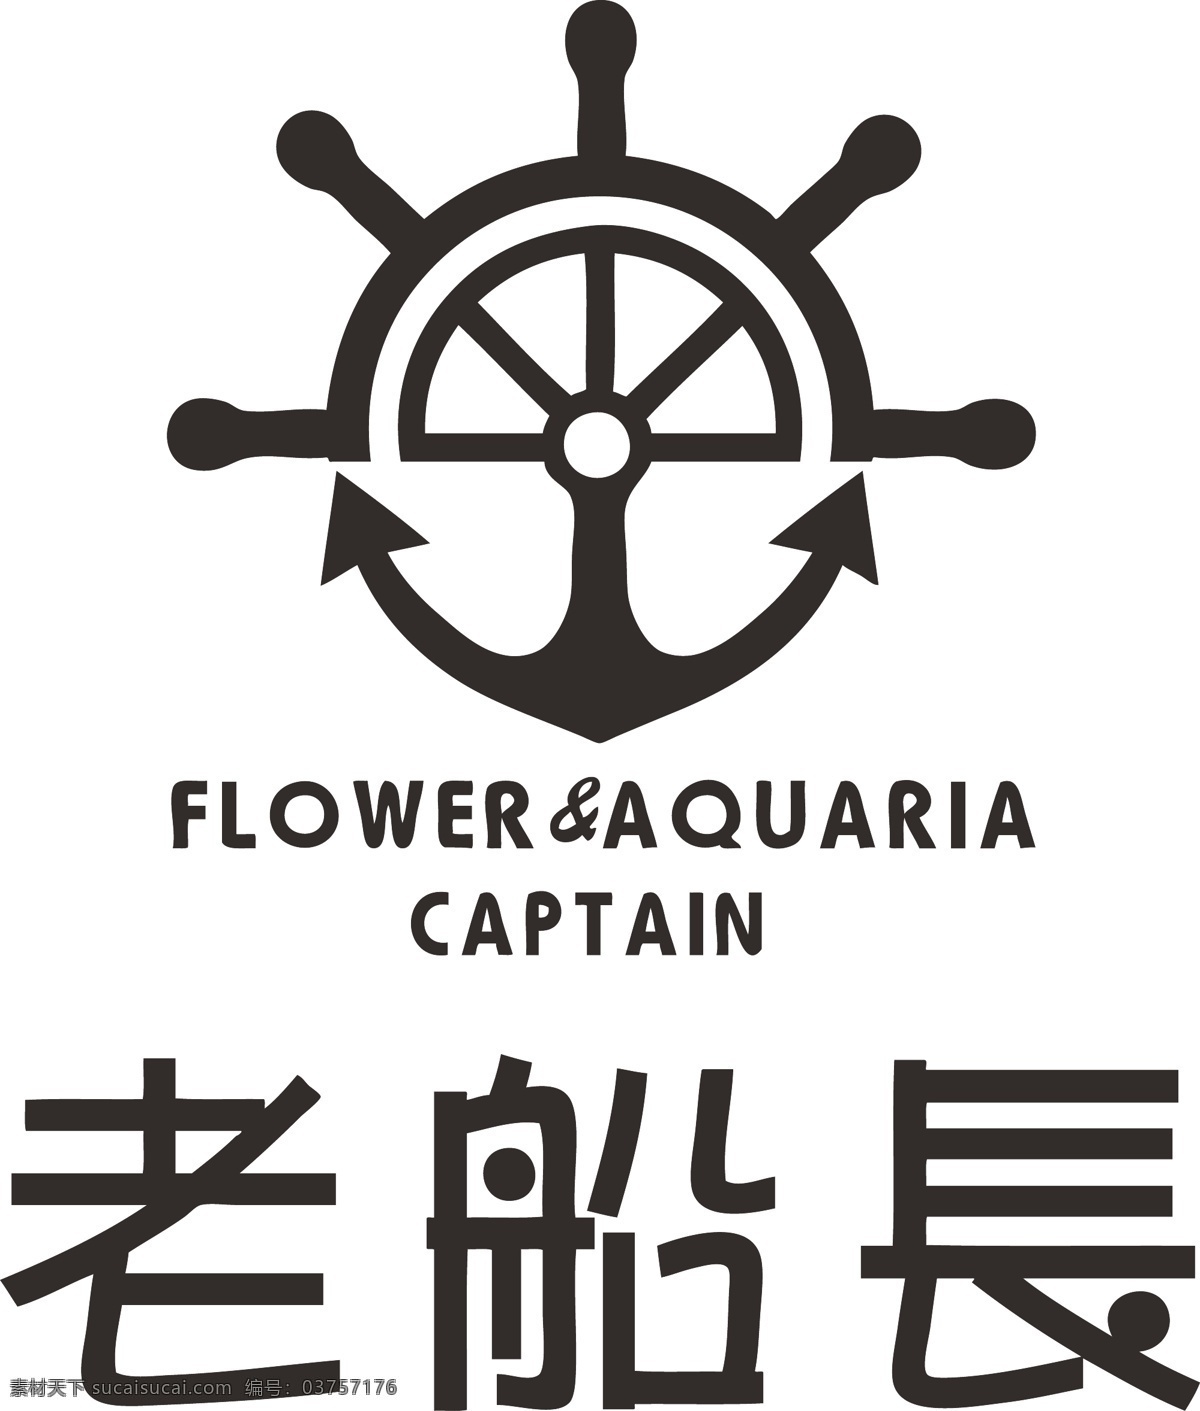 老船长 logo 鲜花 水族 老 船长 广告 logo设计